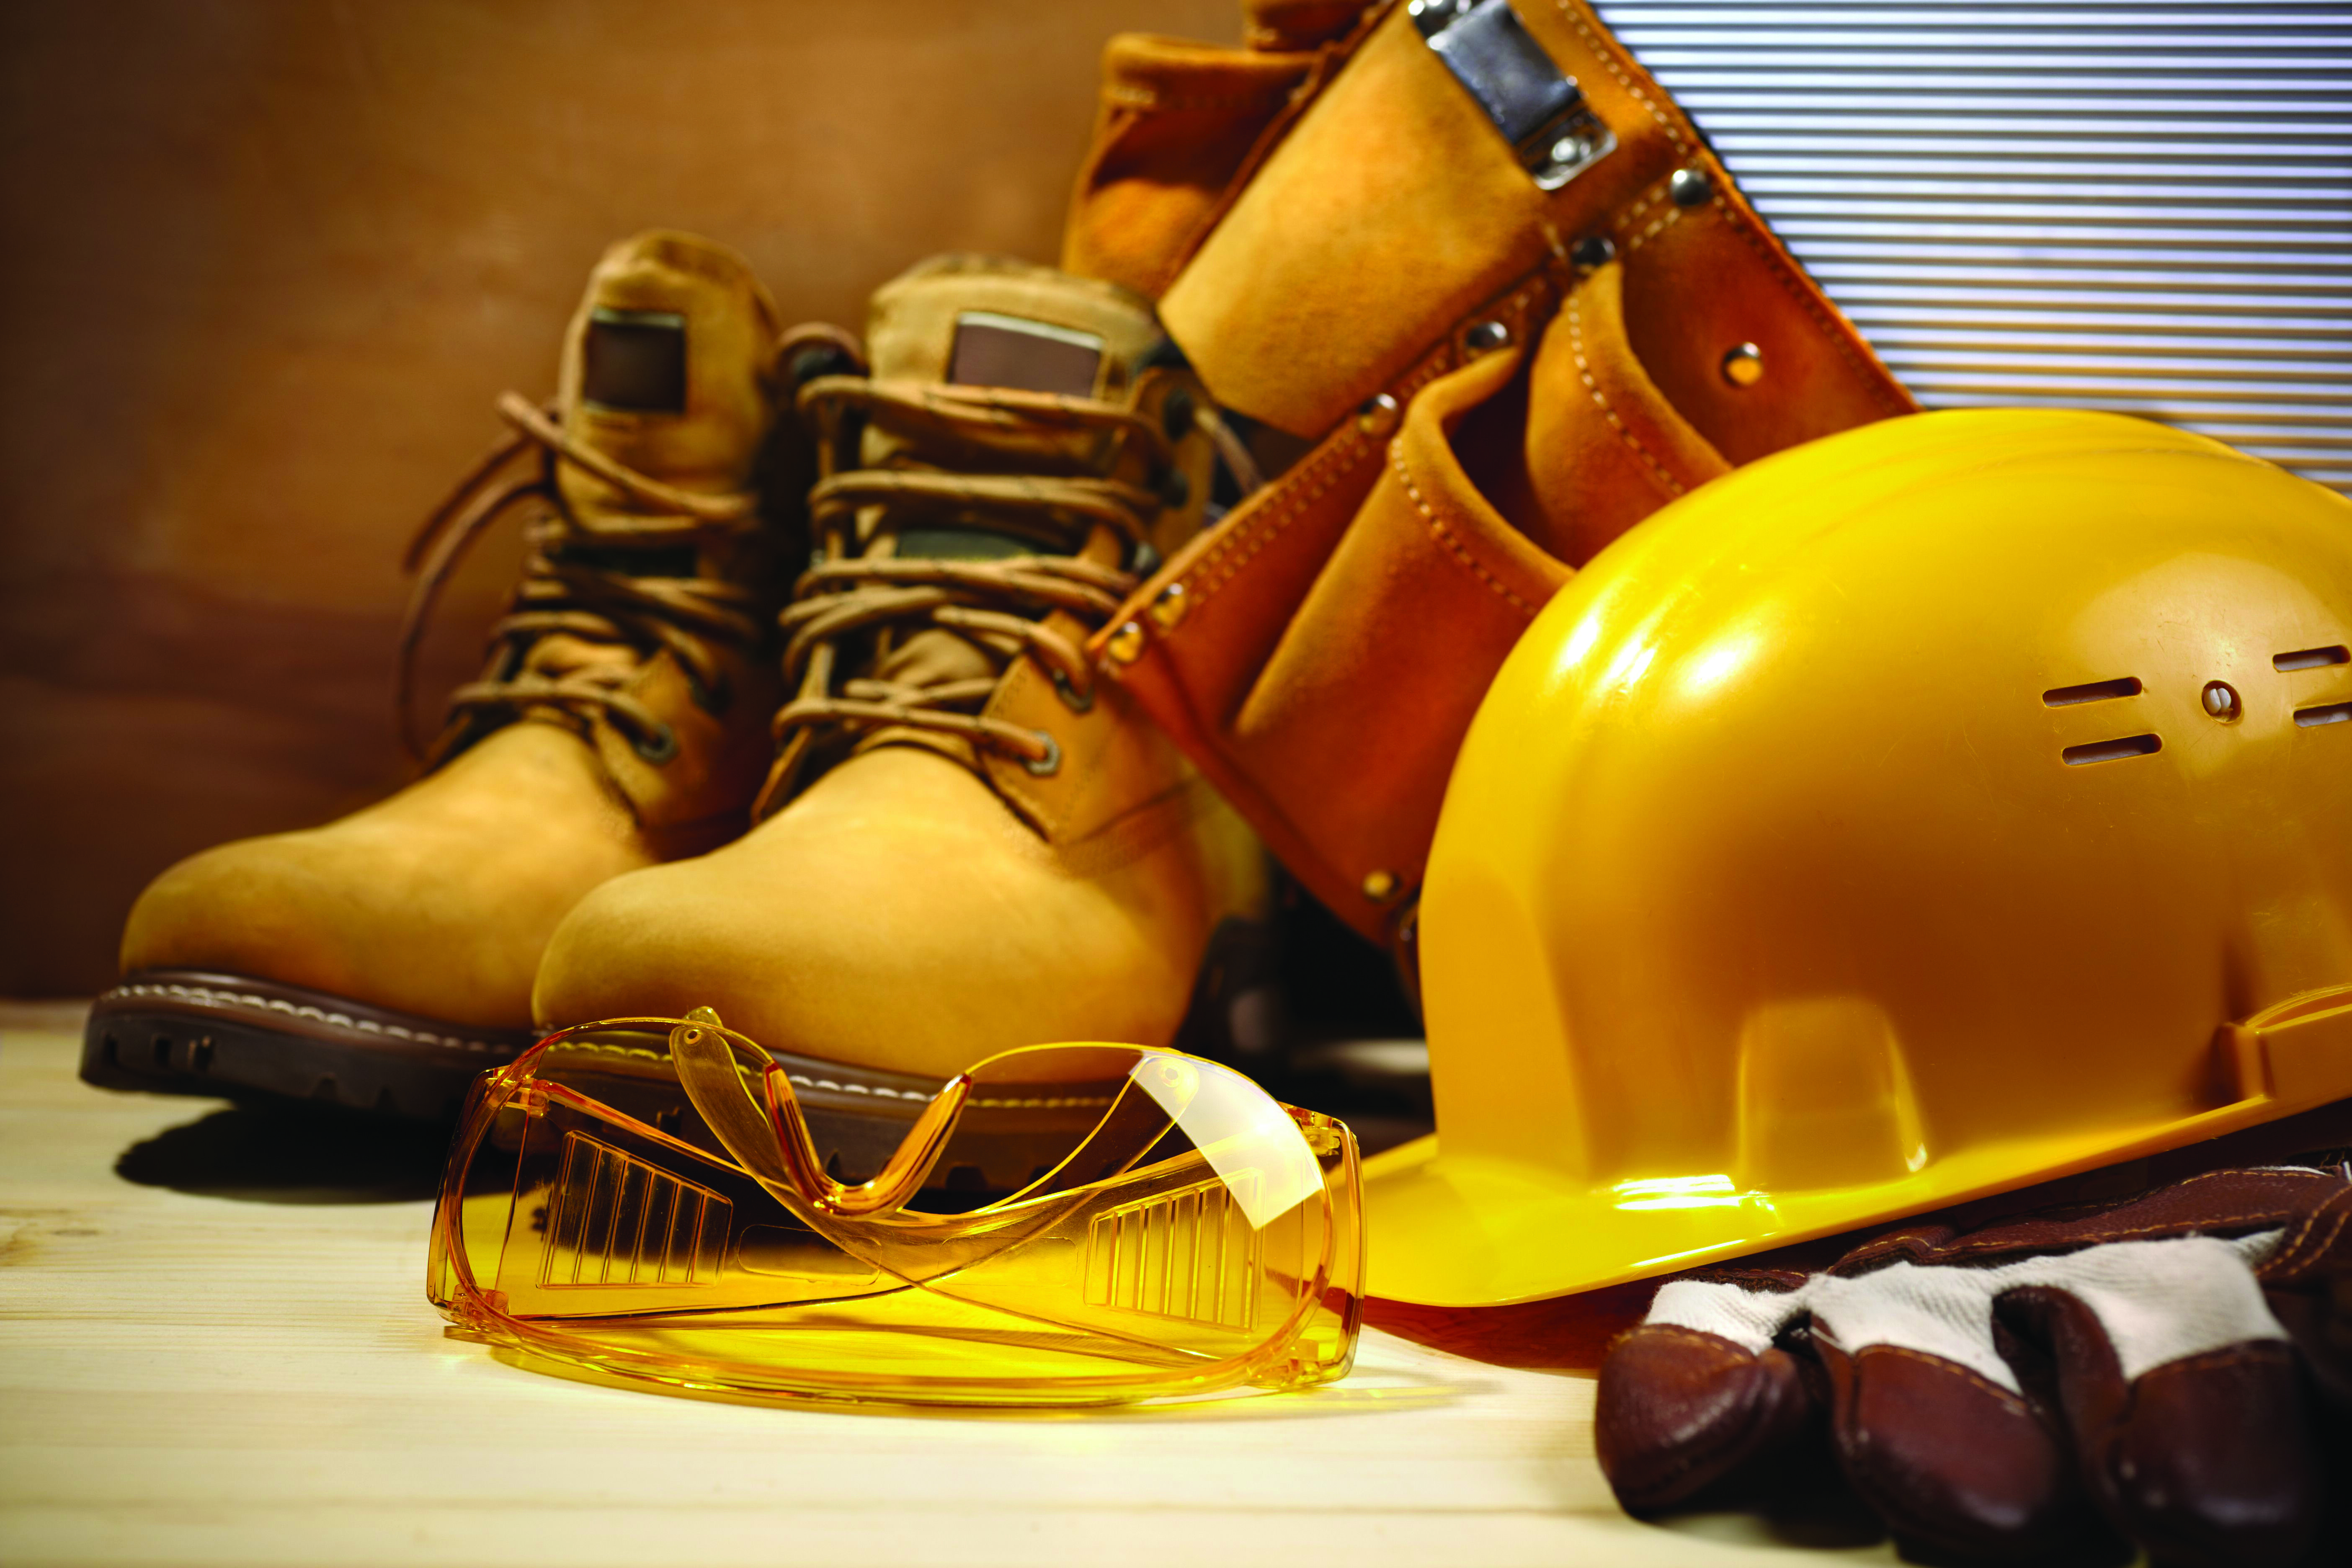 Habillements de chantier avec un casque jaune, des lunettes de protection, des chaussures et une paire de gants.